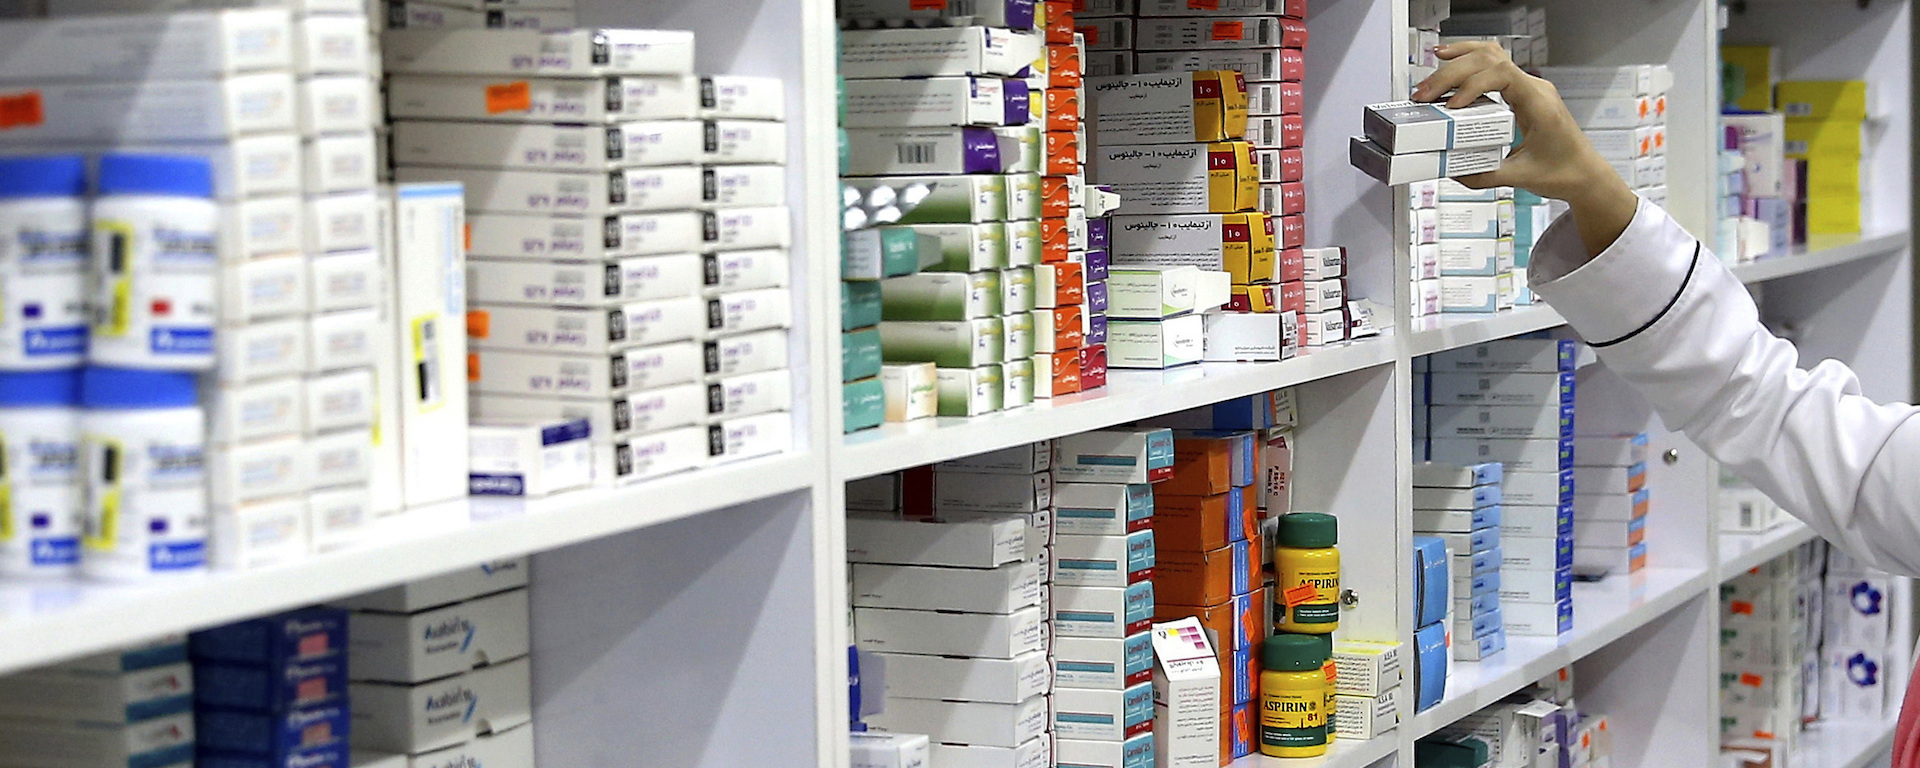 Минздрав РФ готов закупать отдельные виды лекарств при их дефиците